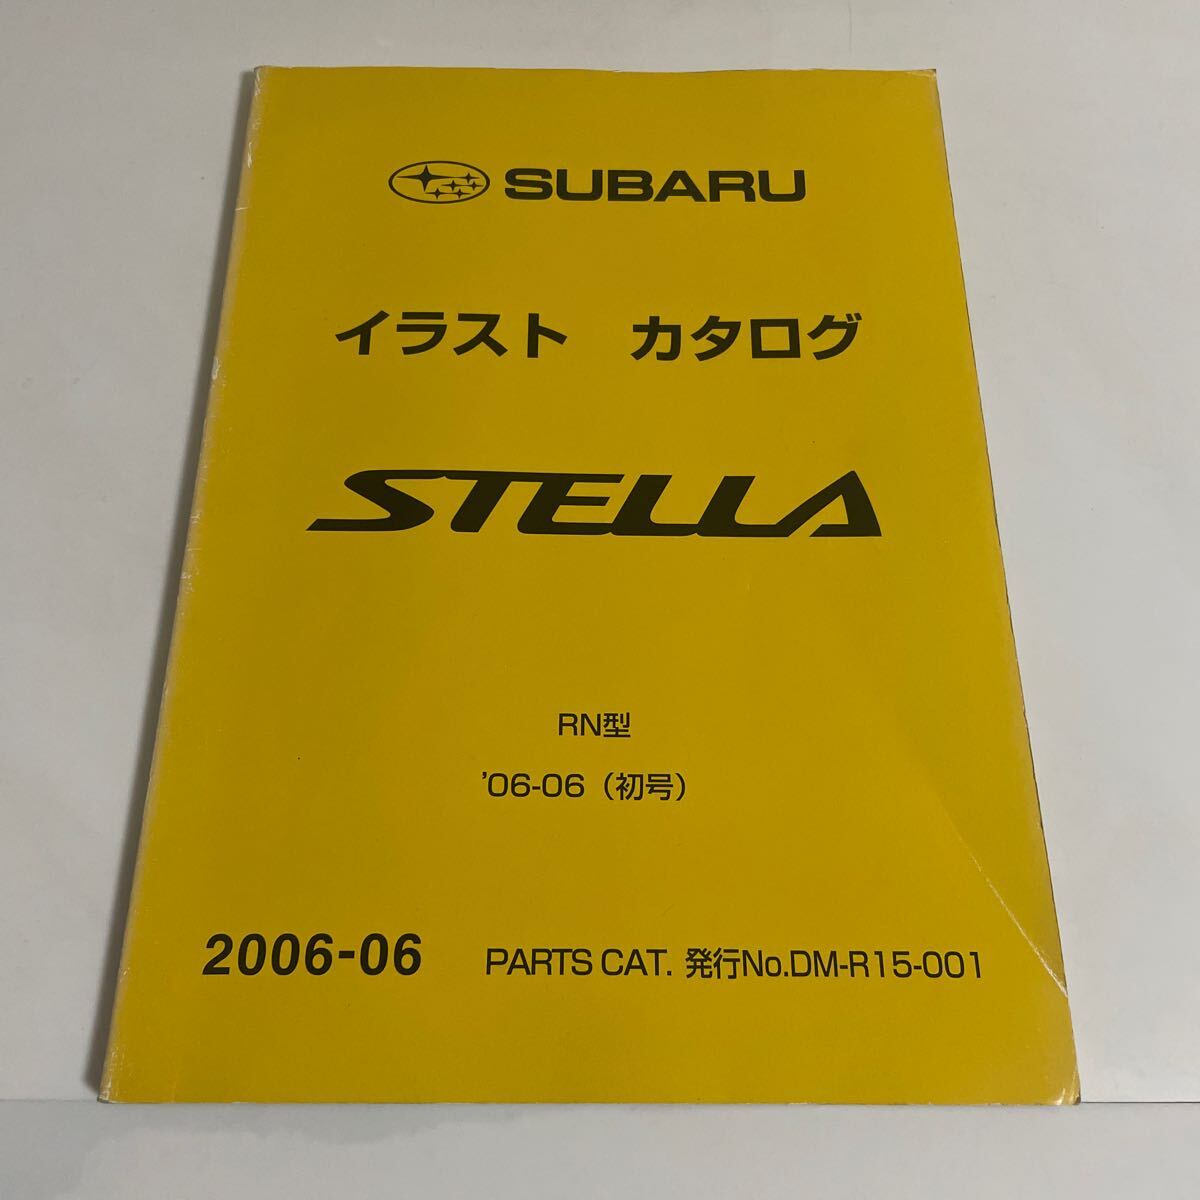 スバル ステラ SUBARU STELLA RN型 イラストカタログ 平成18年 2006年6月 初号 富士重工業 パーツカタログ パーツリスト_画像1